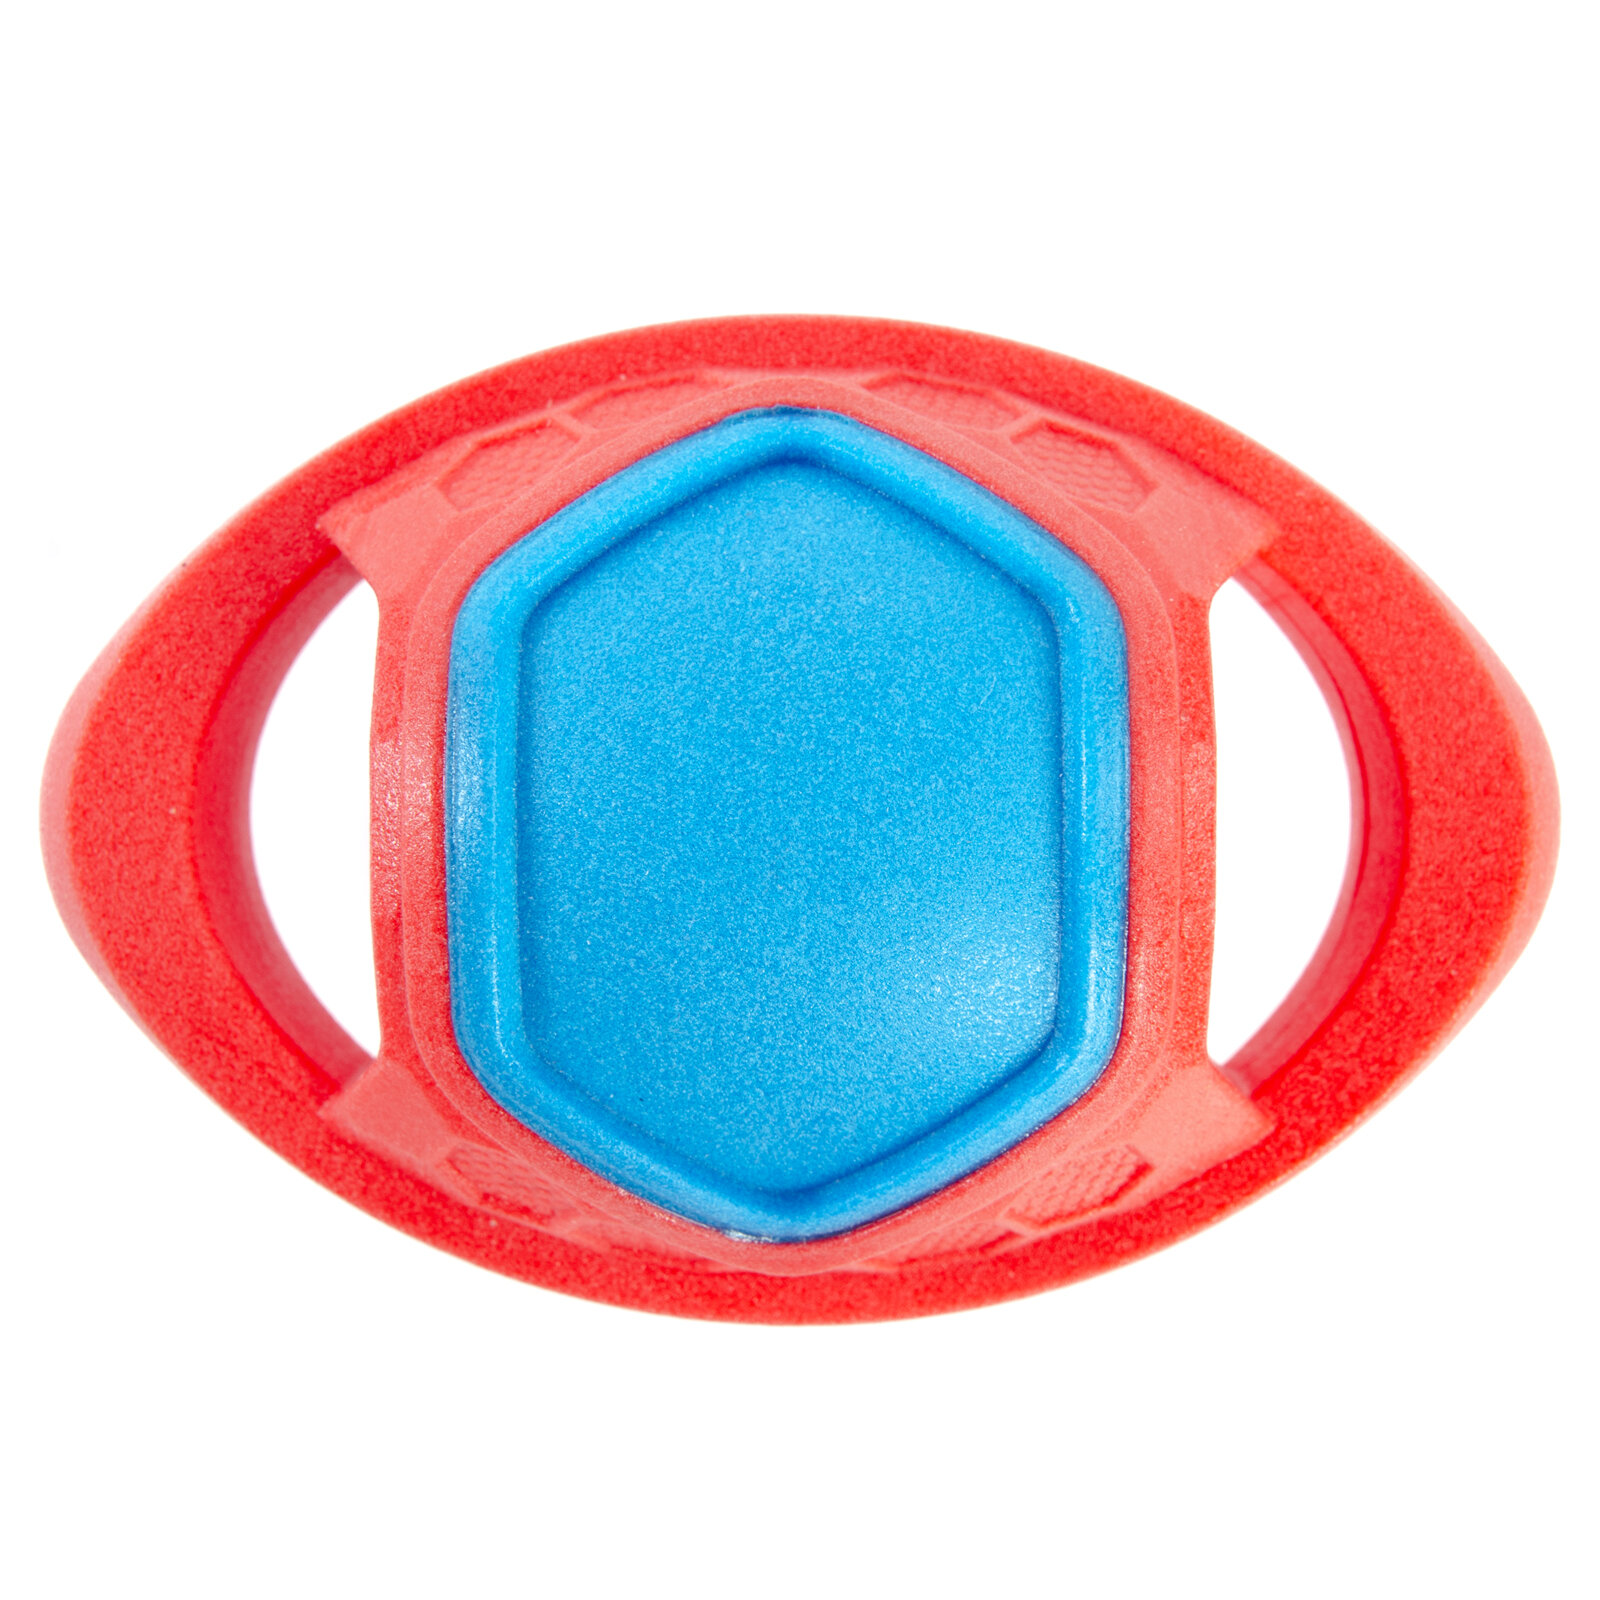 Игрушка для собак резиновая EliteDog "Мяч регби", красно-синяя, 12.8х8.5х7.5см